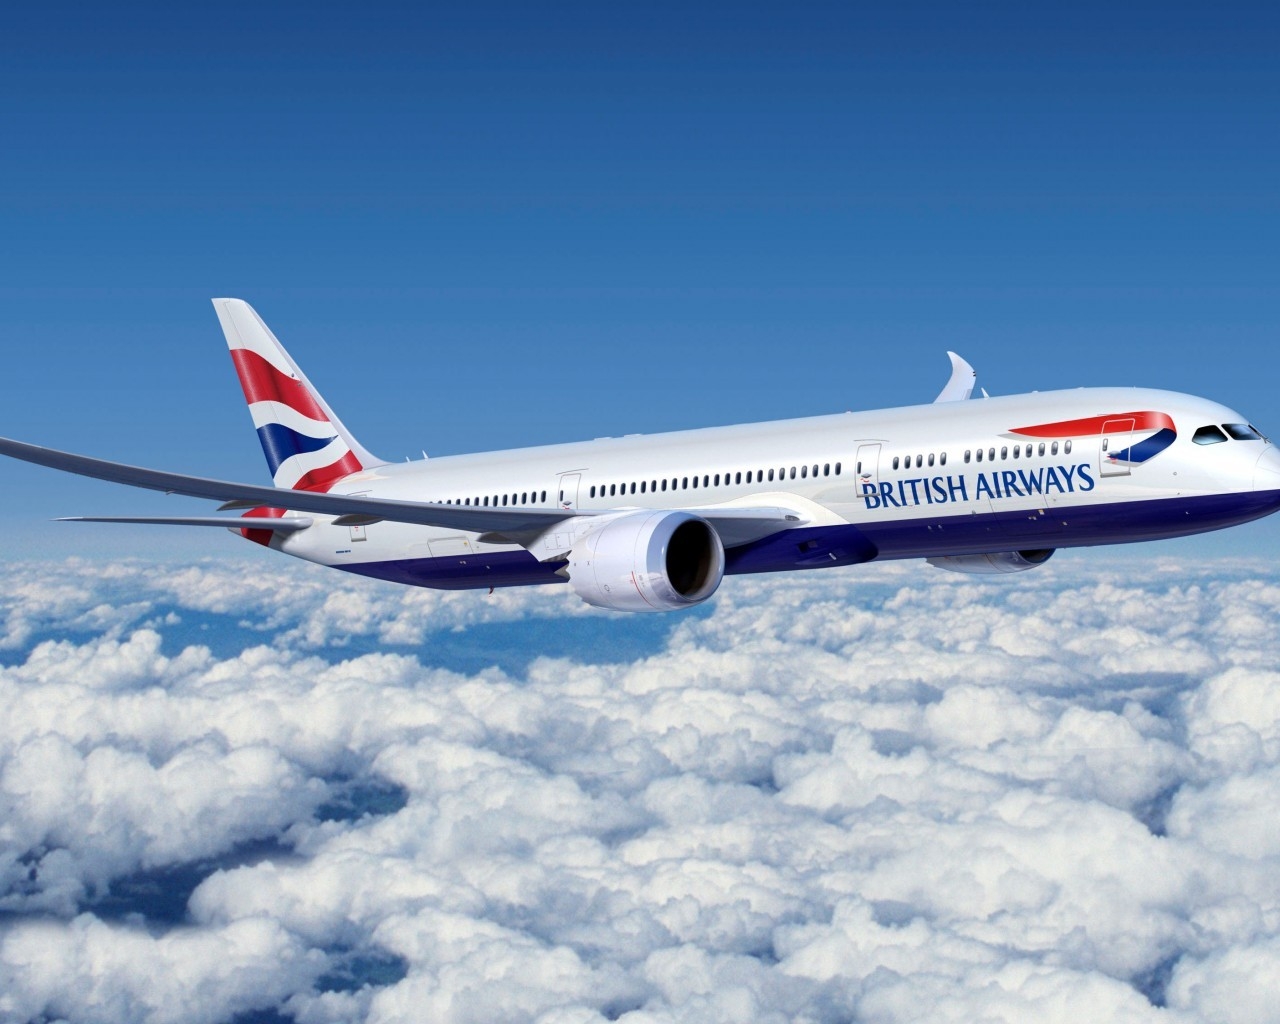 Boeing 777 British Airways for 1280 x 1024 resolution